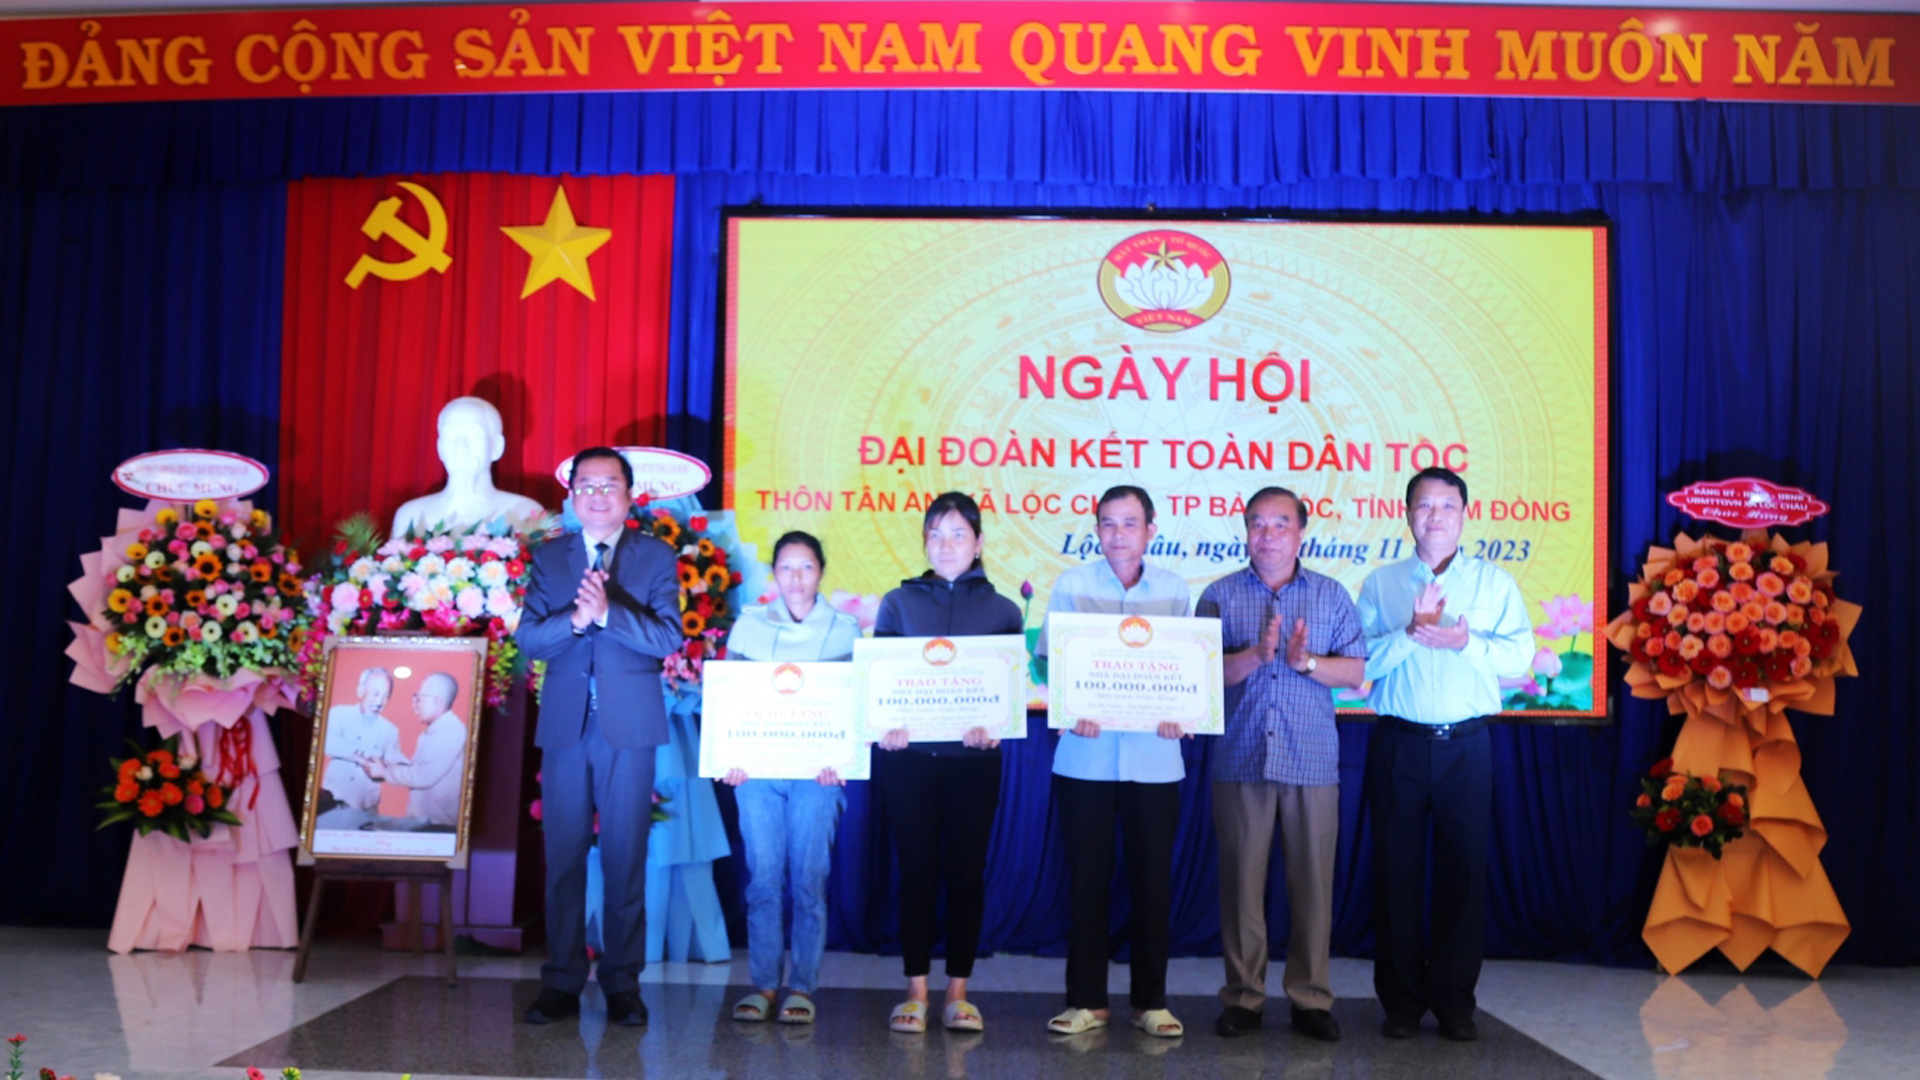 Bí thư Thành ủy Bảo Lộc Tôn Thiện Đồng và Phó Chủ tịch UBND TP Bảo Lộc Phùng Ngọc Hạp trao tặng quà cho hộ nghèo xã Lộc Châu